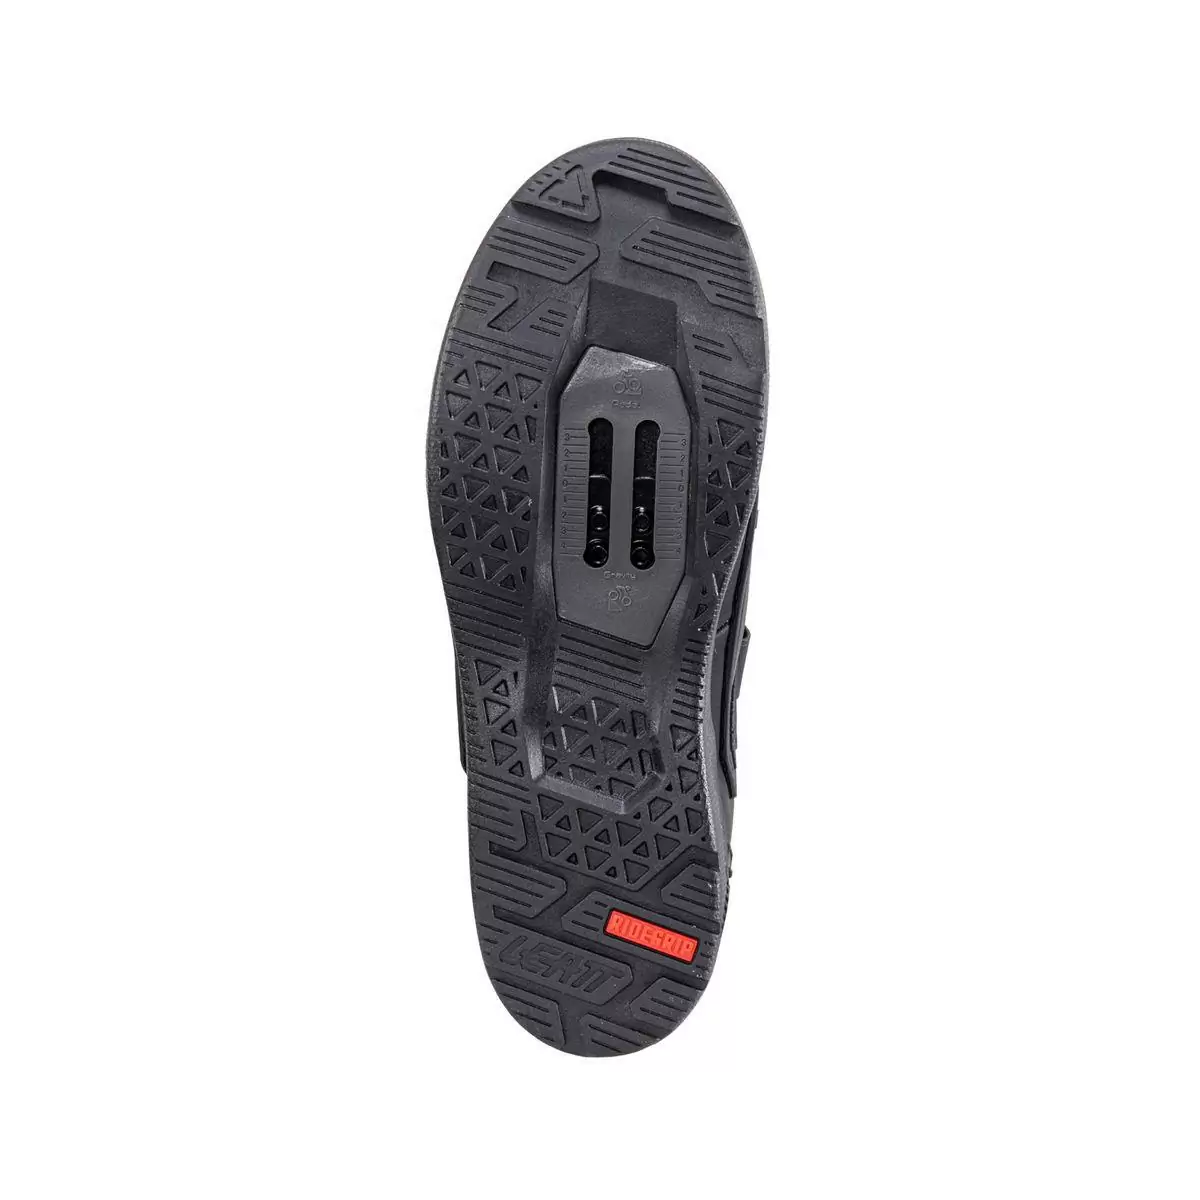 Chaussures VTT imperméables HydraDri ProClip 5.0 noir taille 38,5 #3